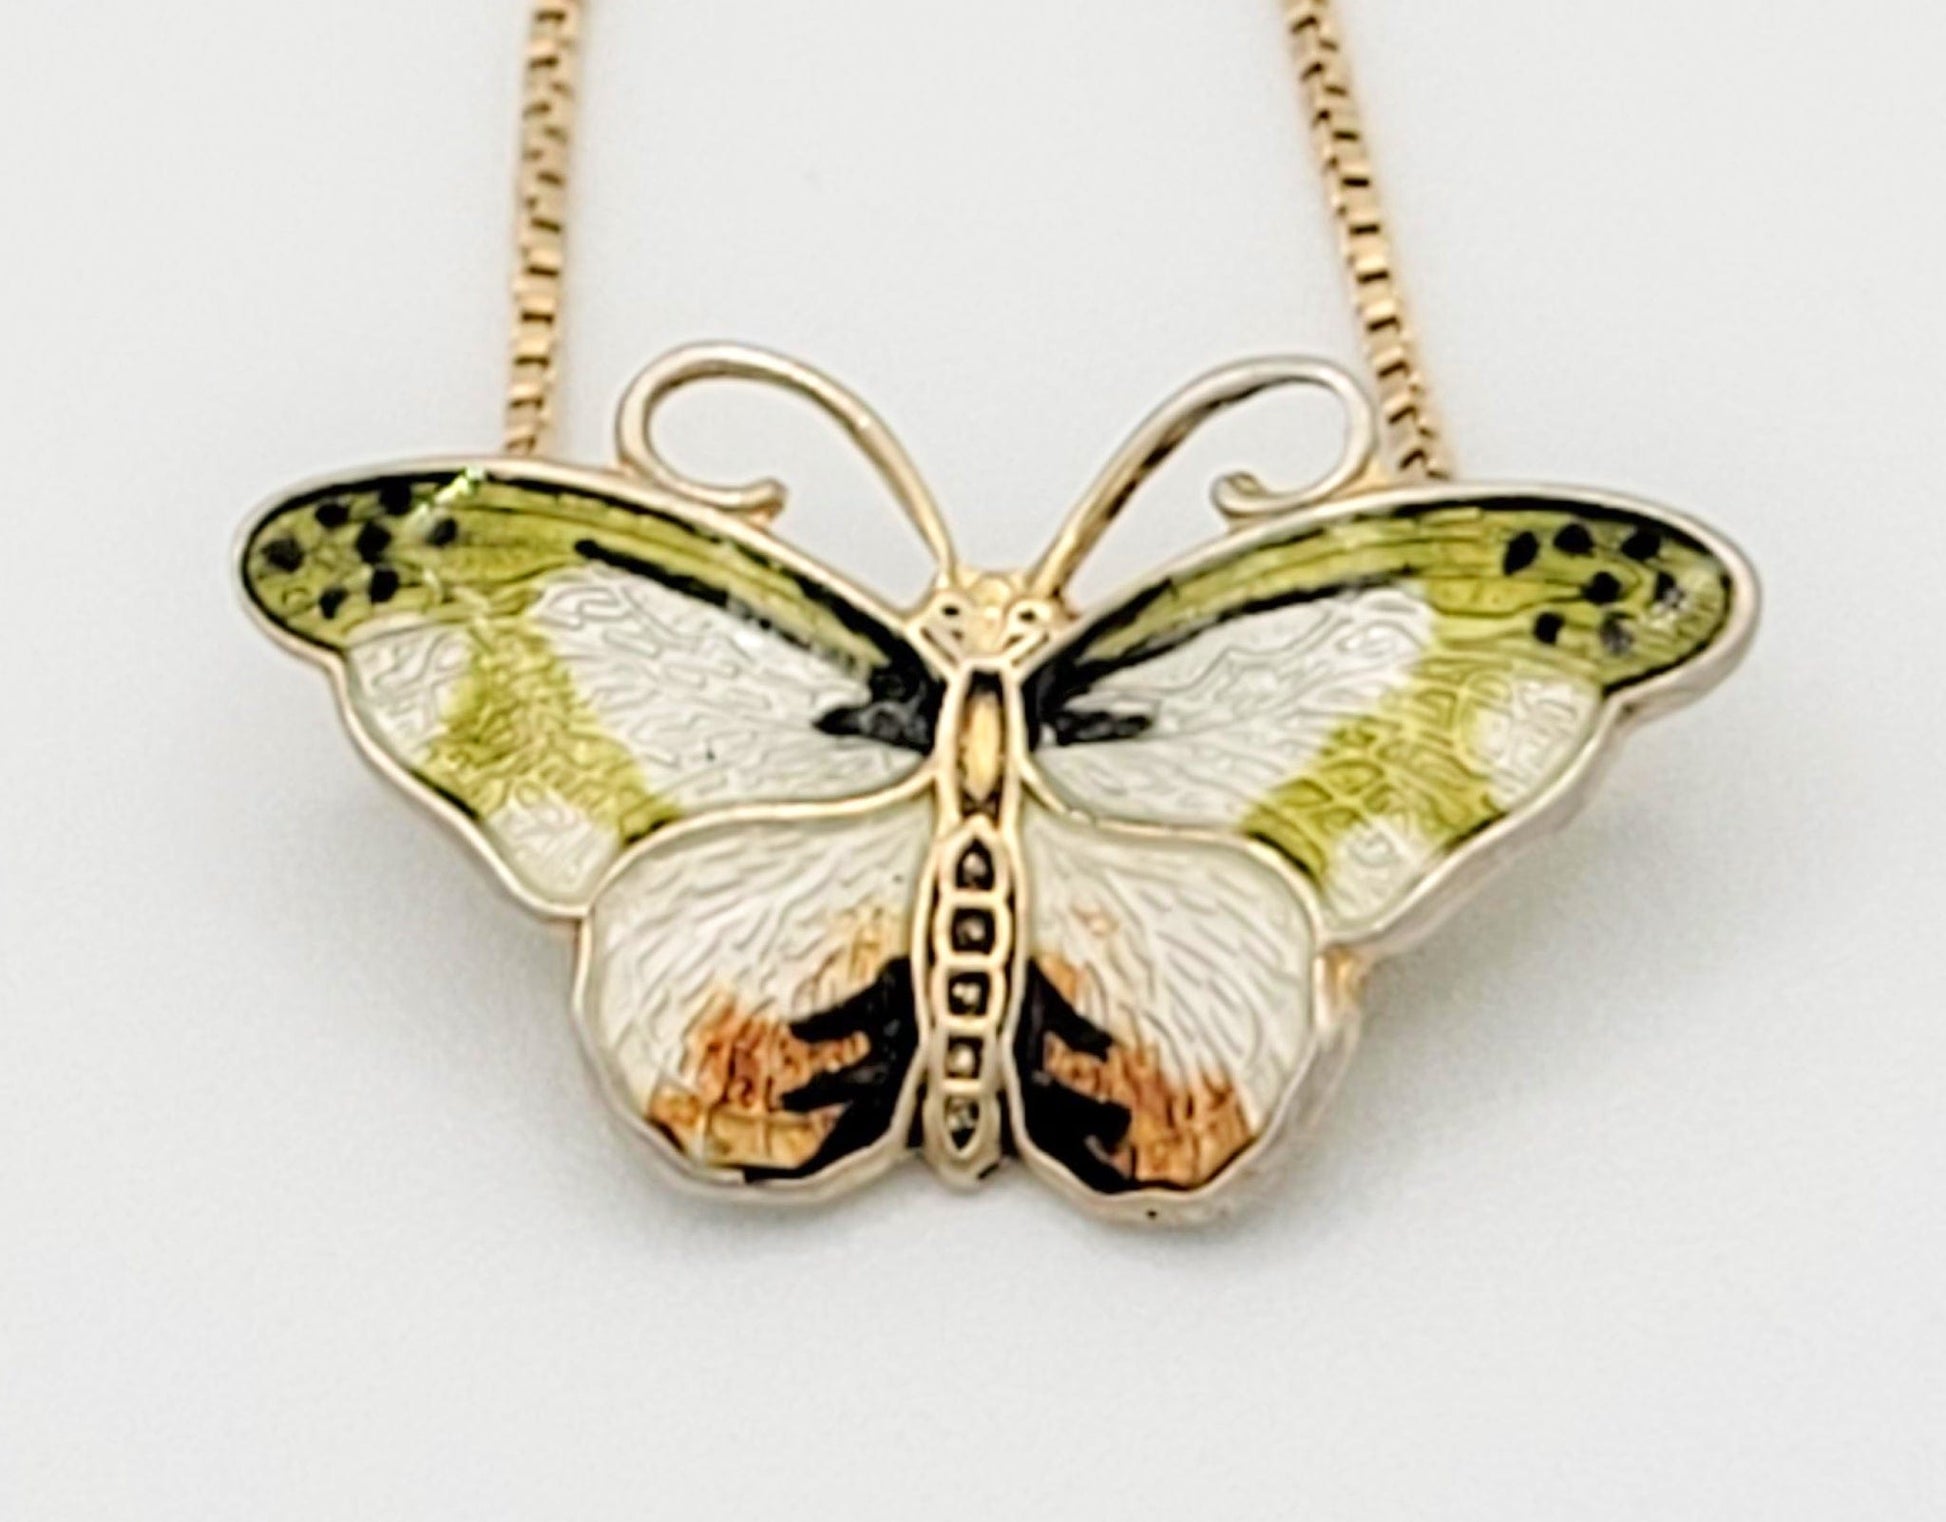 Hroar Prydz Jewelry Norwegian Designer Hroar Prydz Sterling Enamel Butterfly Pendant Necklace 1930s